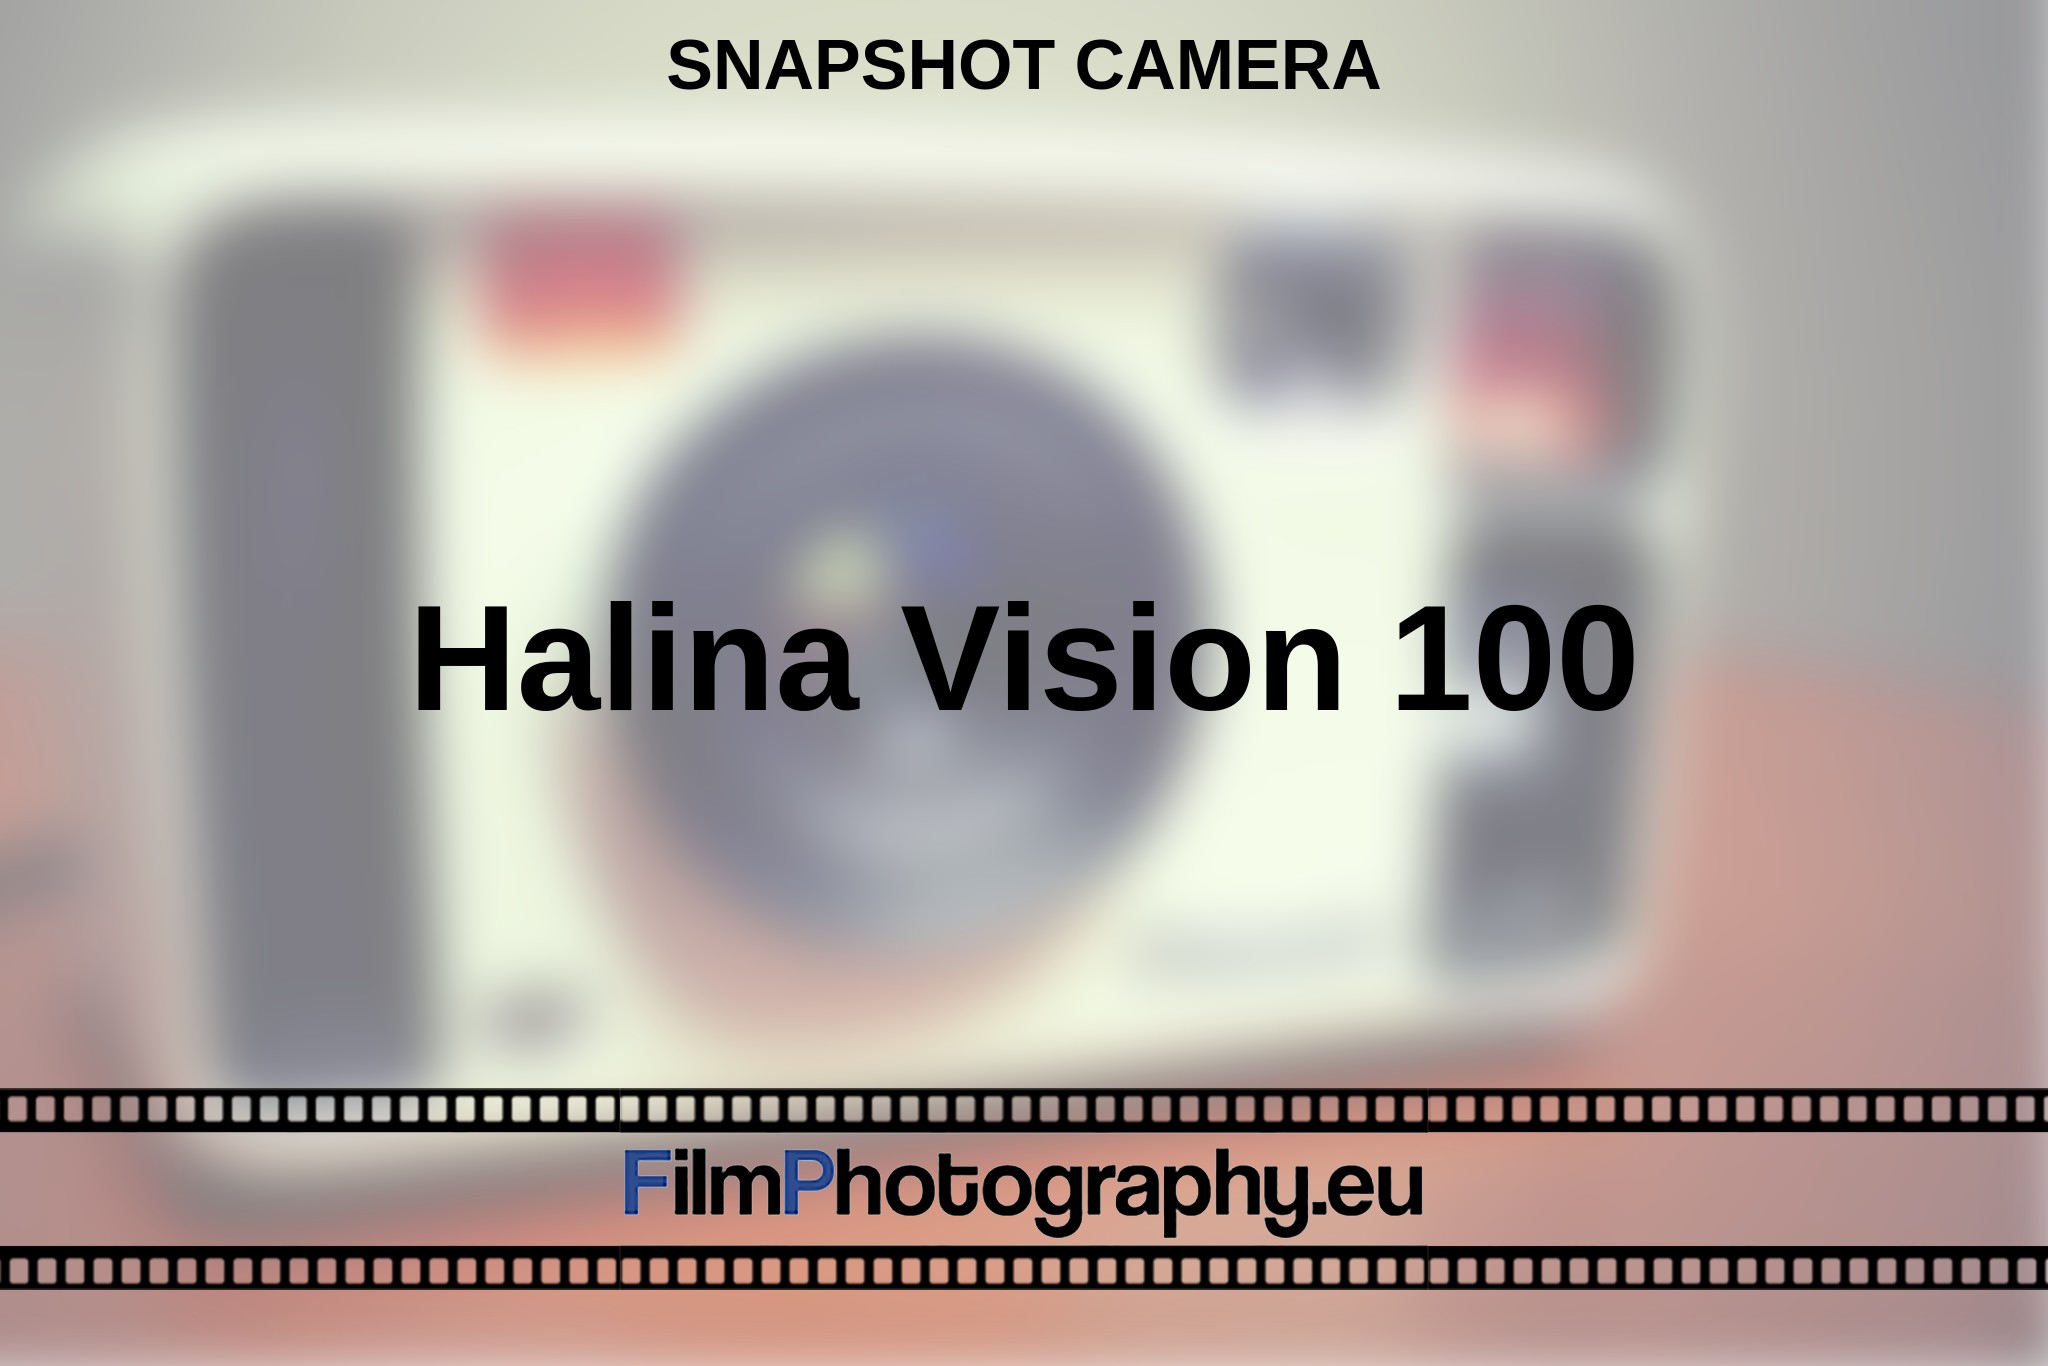 halina-vision-100-snapshot-camera-en-bnv.jpg